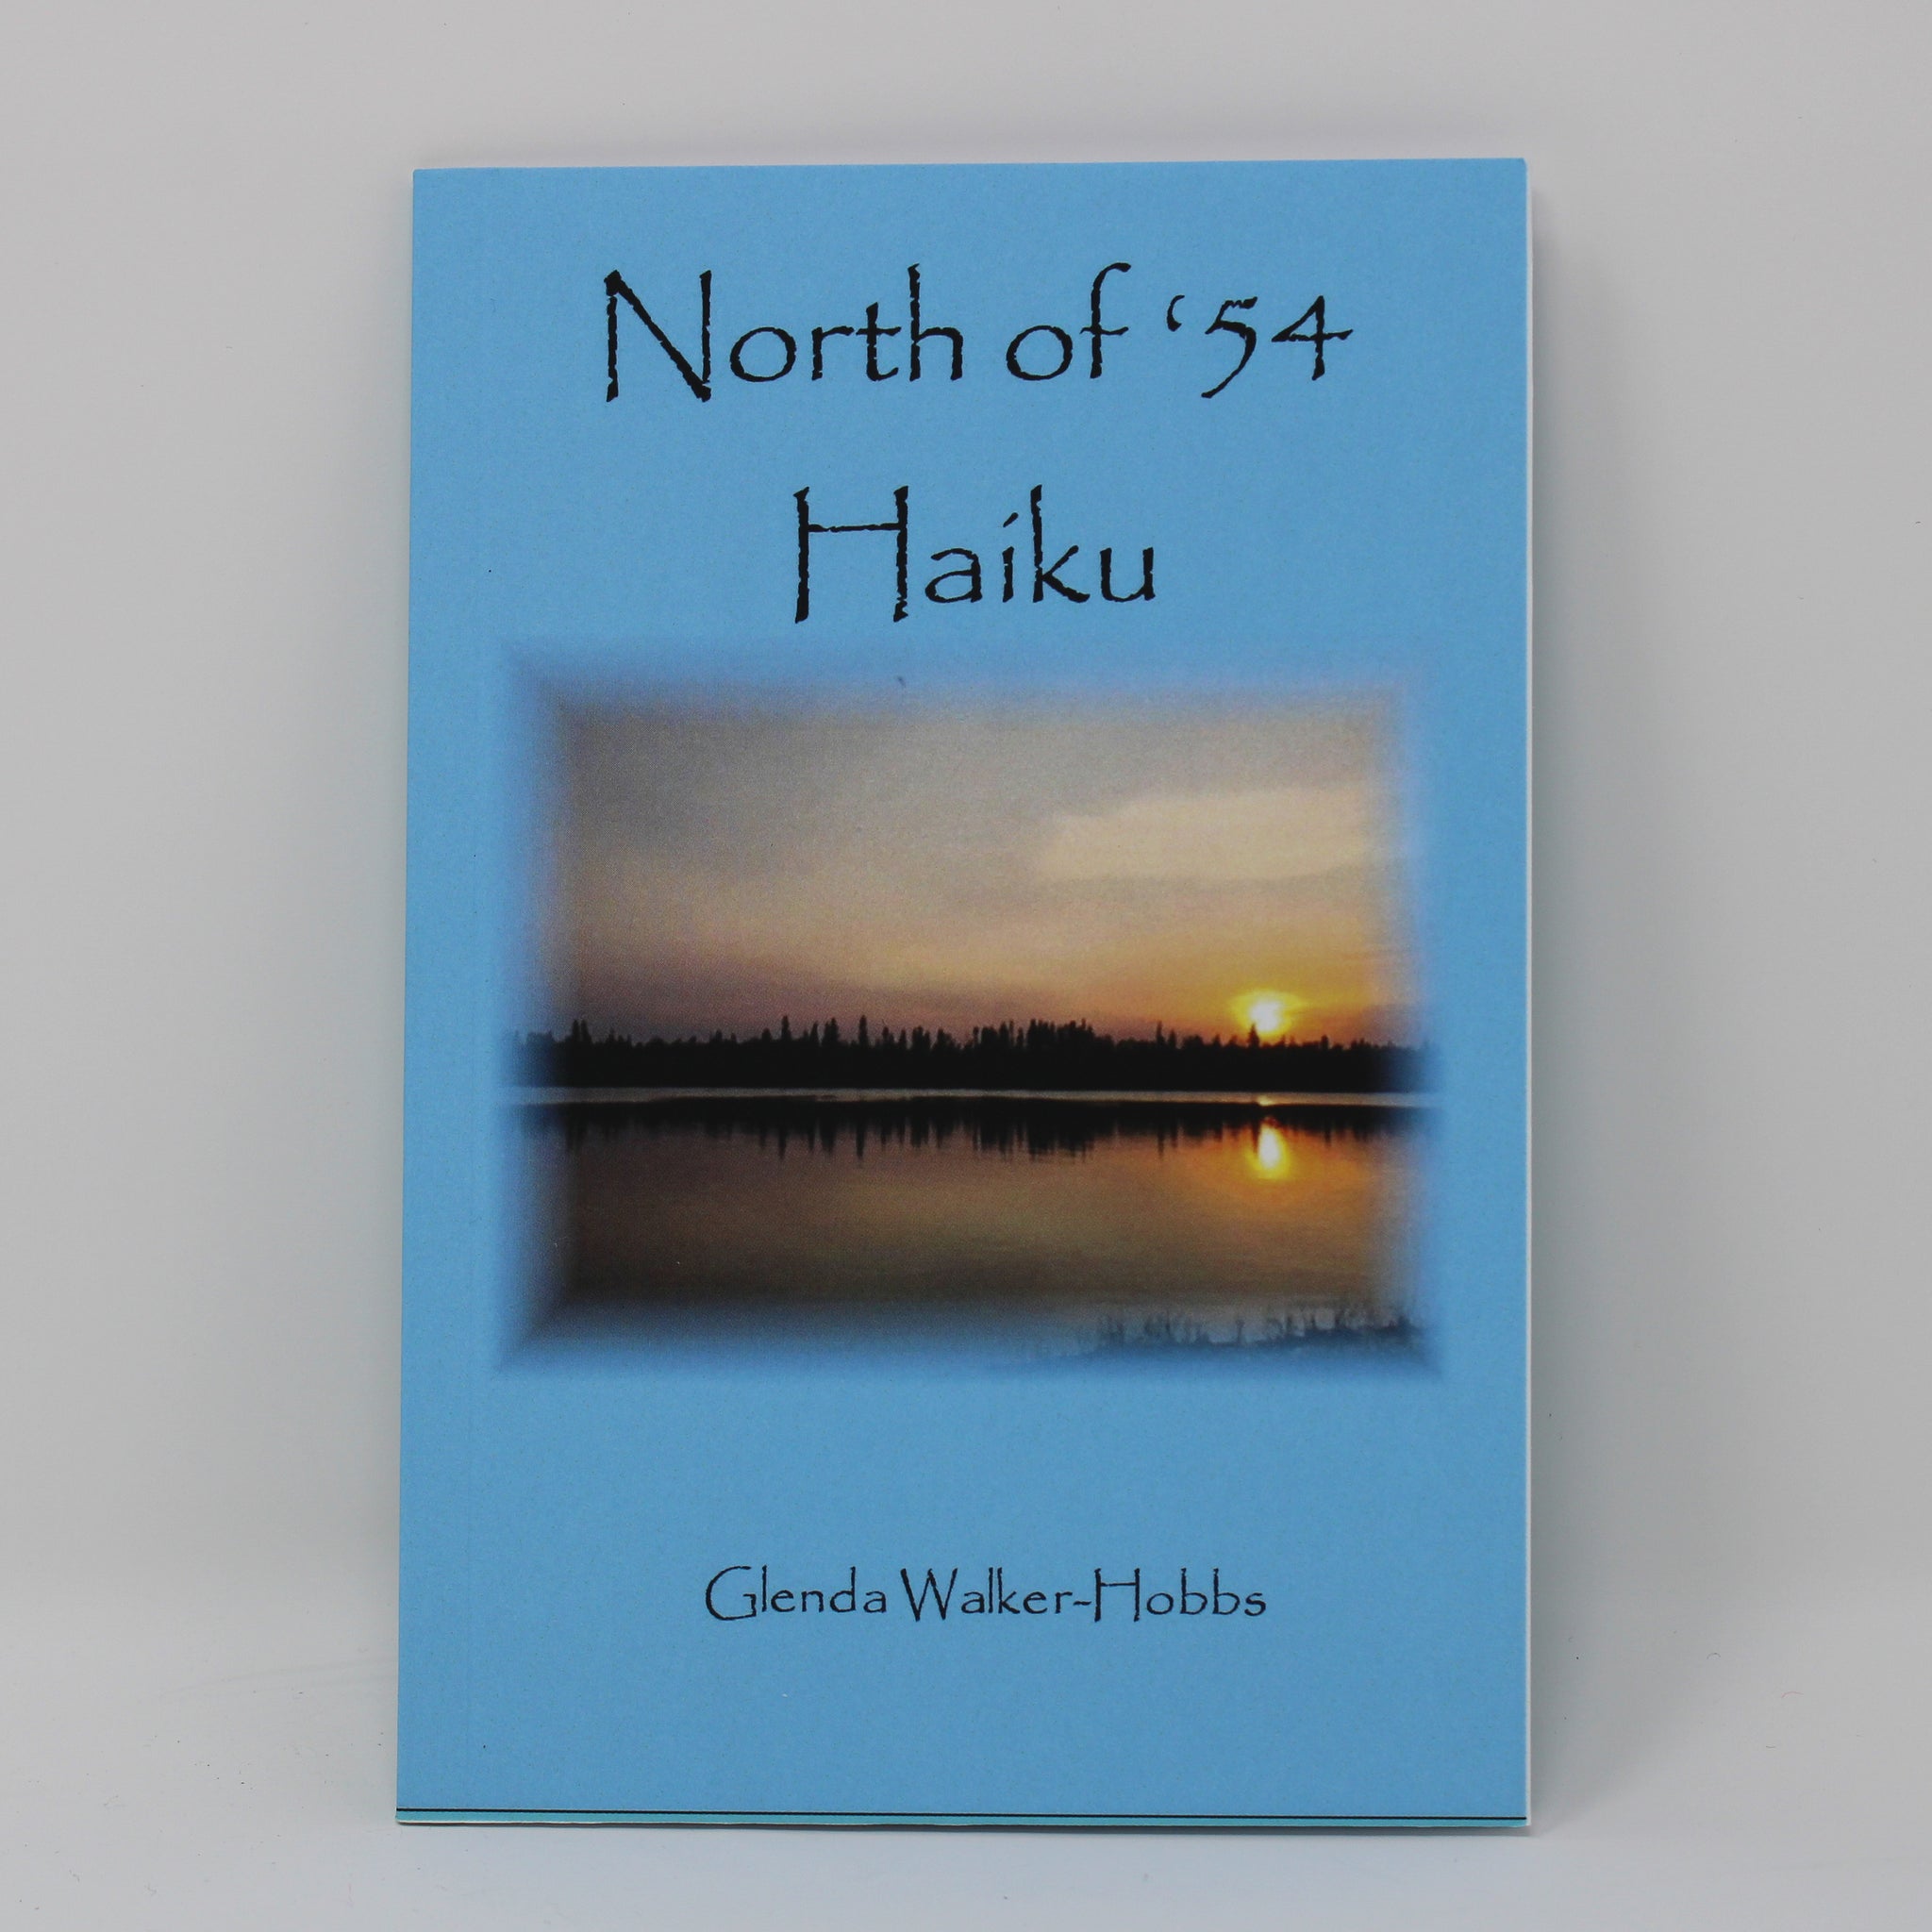 North of 54 Haiku